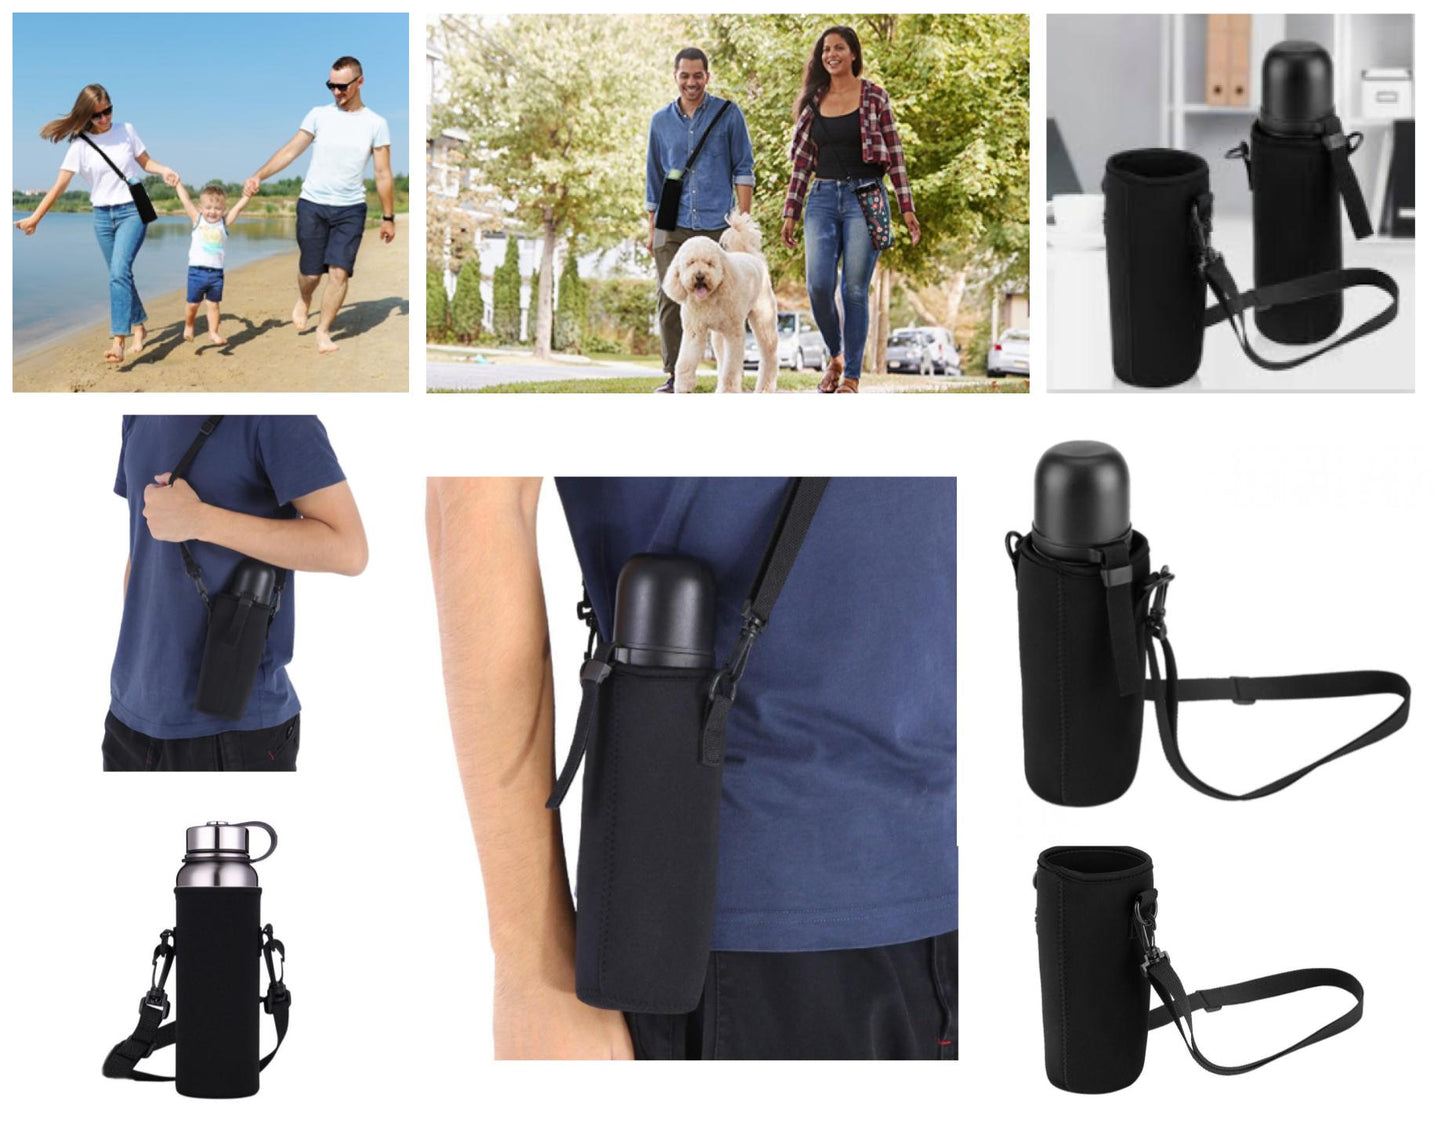 Water Bottle Carry Bag and Water Bottle Holder, Premium Insulated Holder Bag, Adjustable Shoulder Strap, Black, Fits 27-34oz Bottles